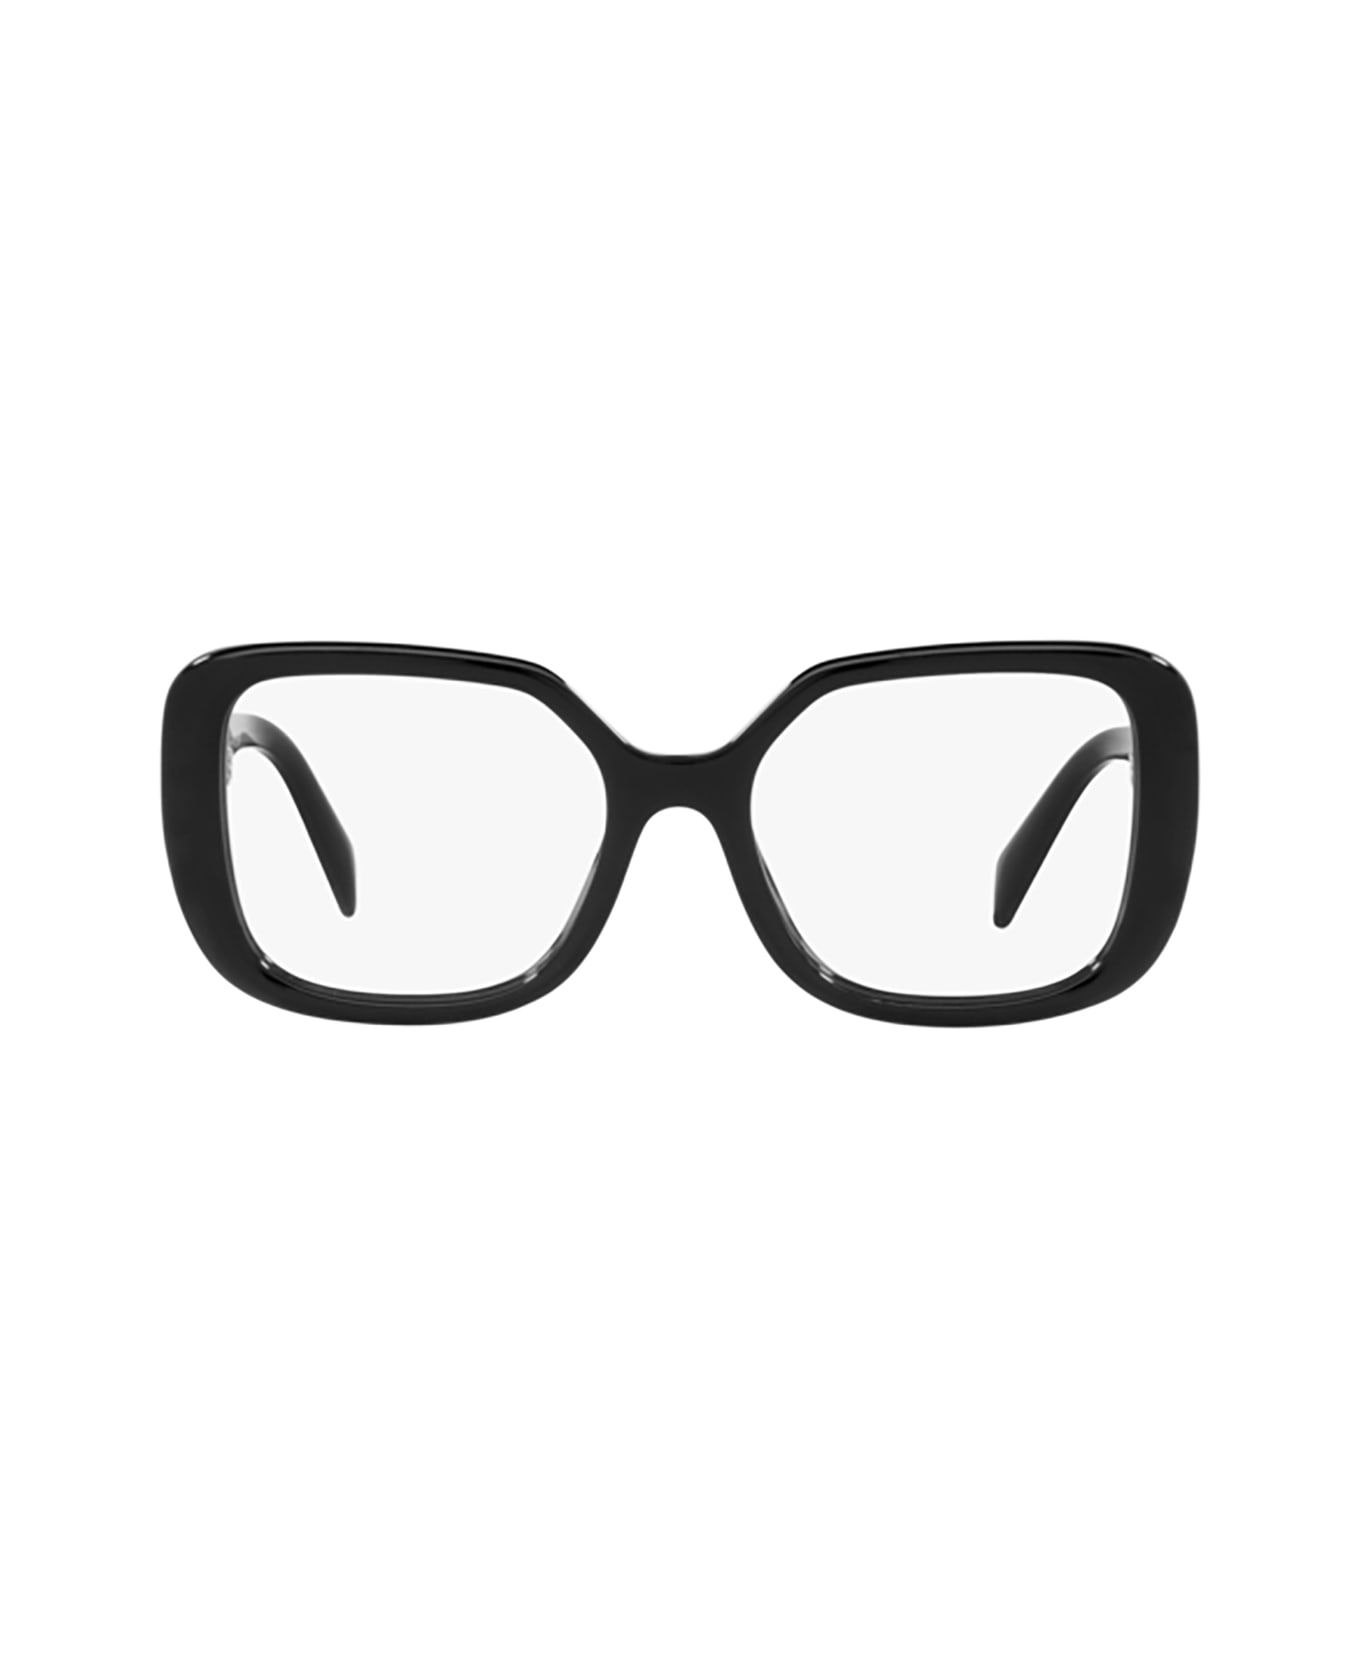 Prada Eyewear Pr 10zv Black Glasses - Black アイウェア